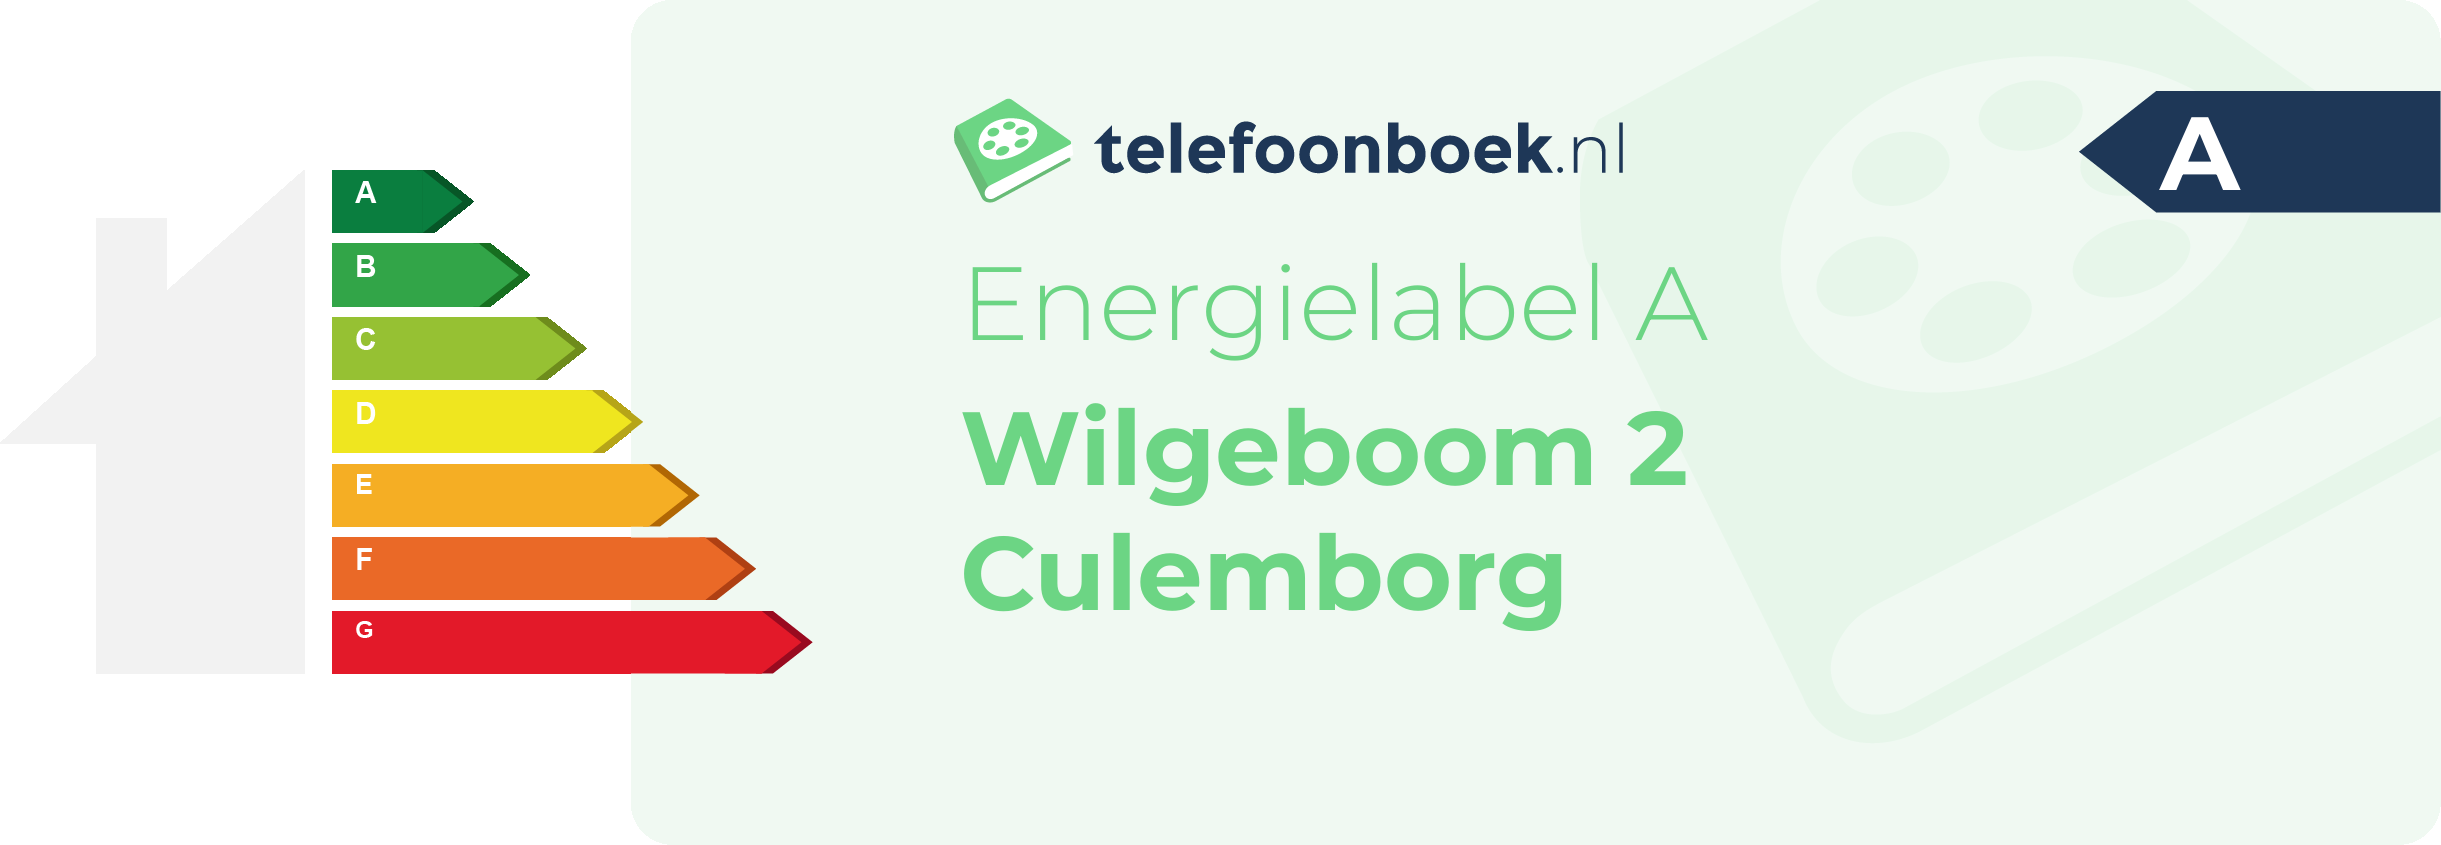 Energielabel Wilgeboom 2 Culemborg